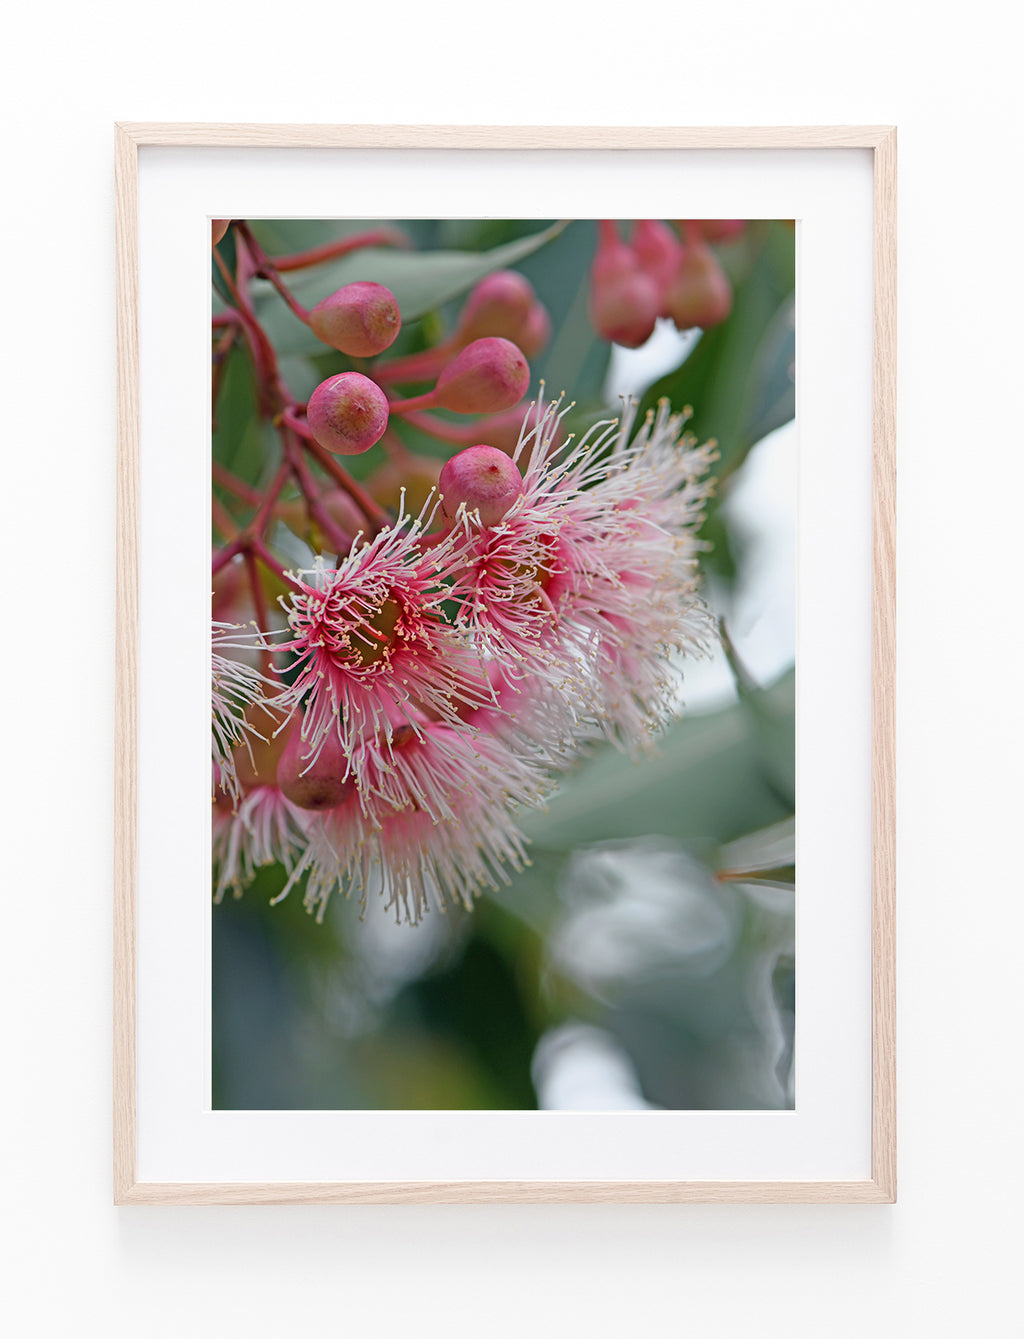 Flowering Eucalyptus Gum